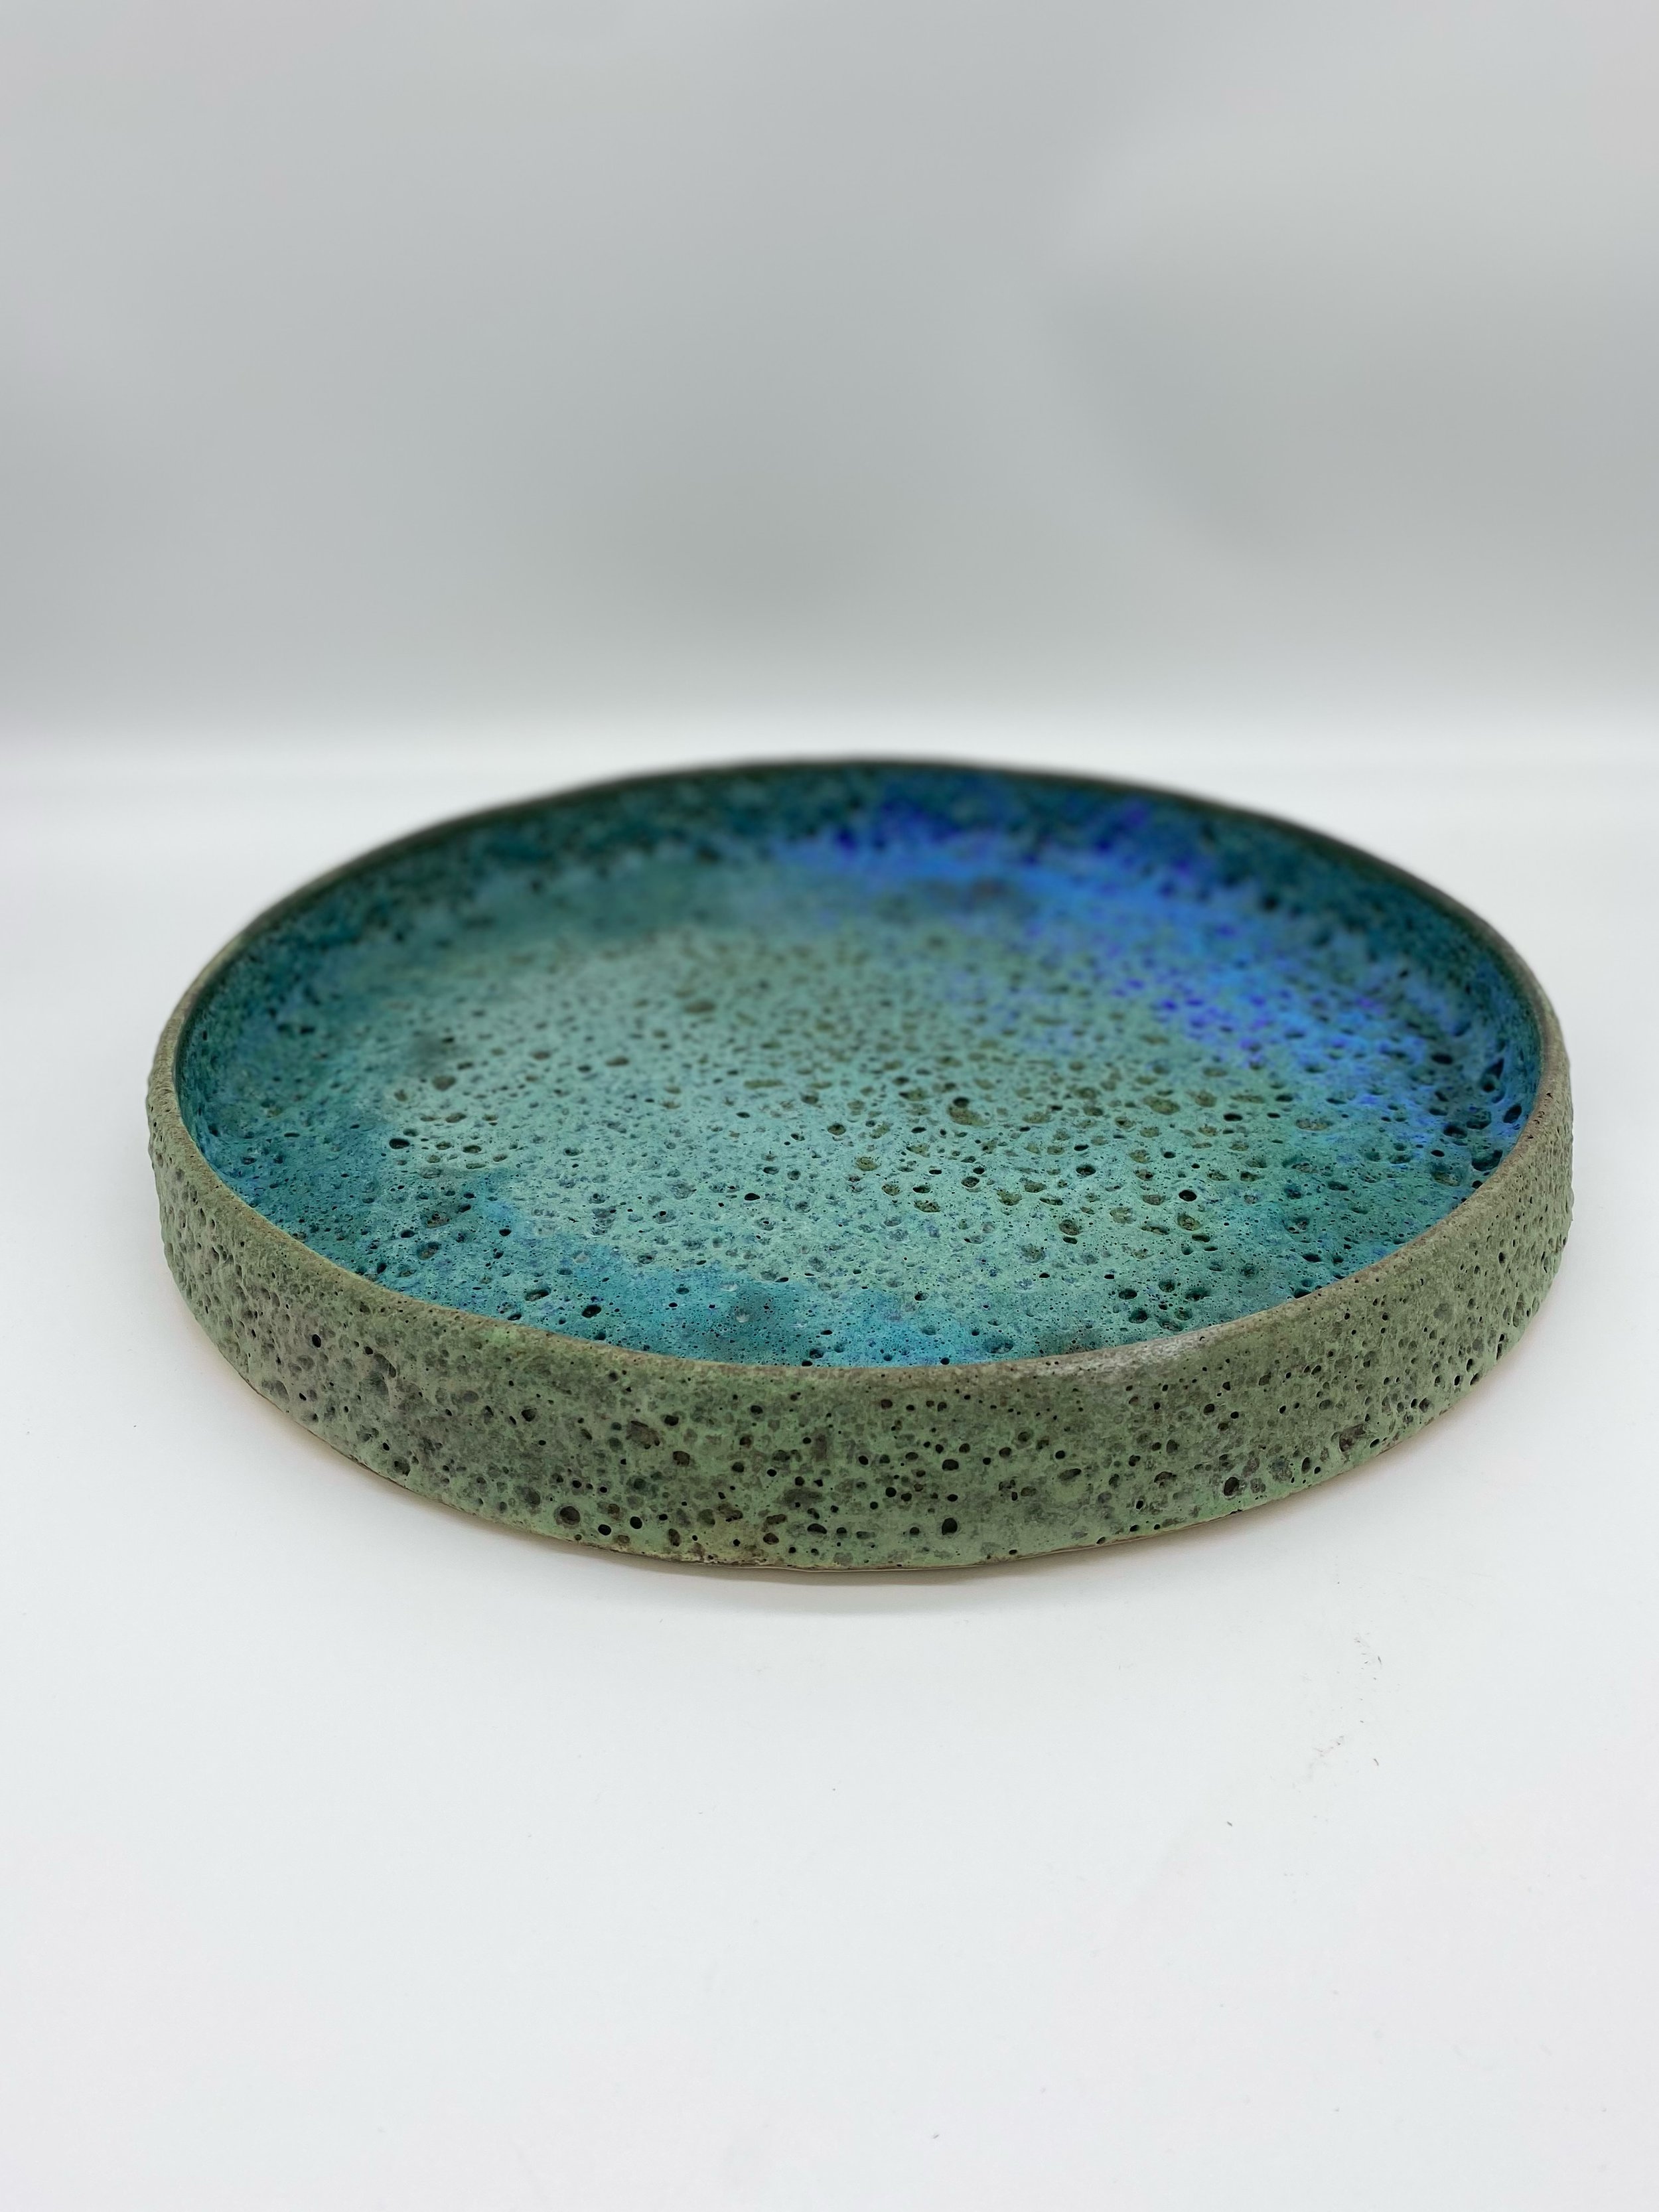 Green/ Blue Plate, 14.5" Diameter, $600